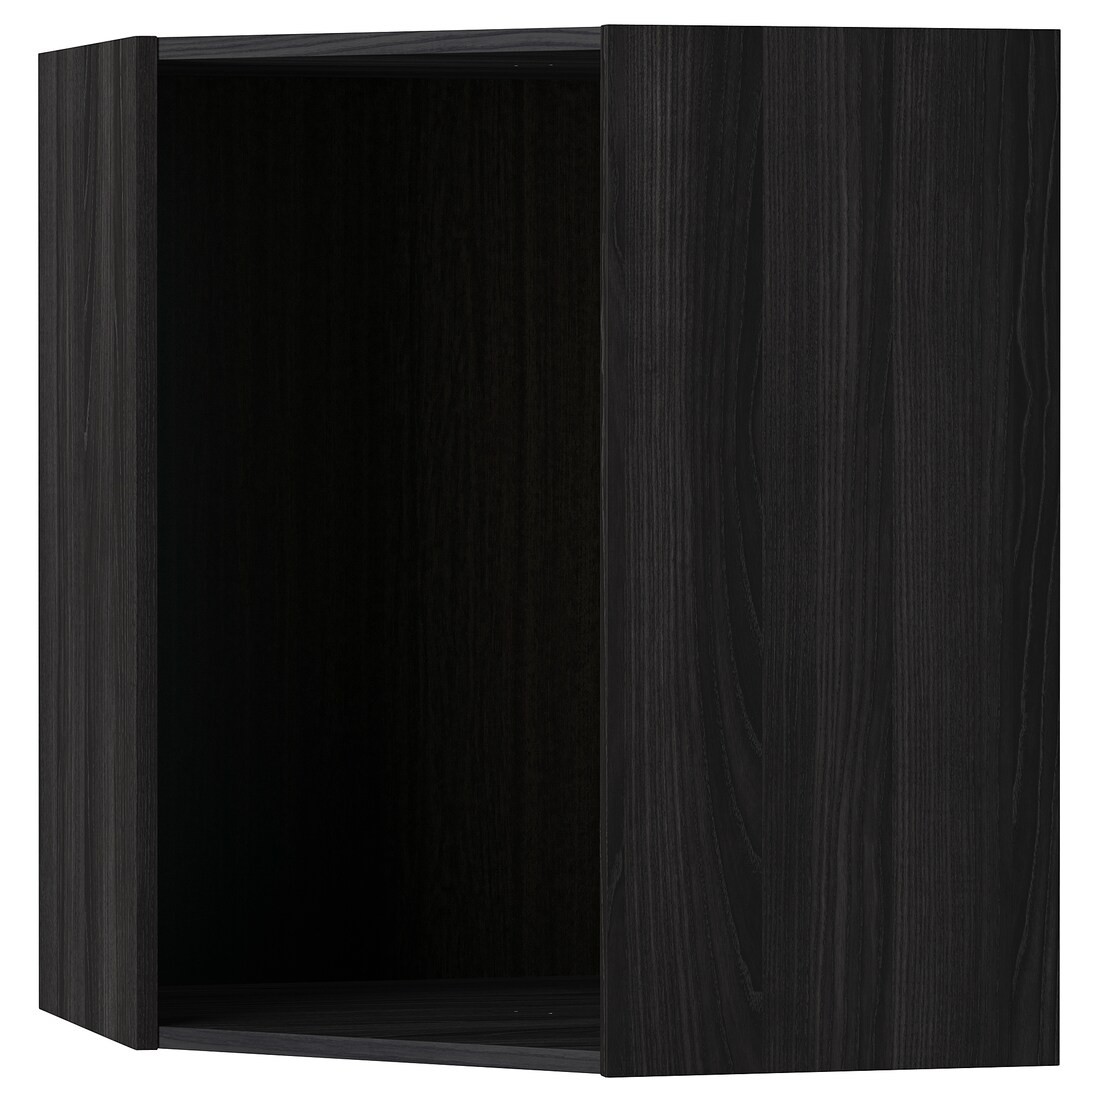 METOD МЕТОД Каркас навесного углового шкафа, имитация дерева черный, 68x68x80 см